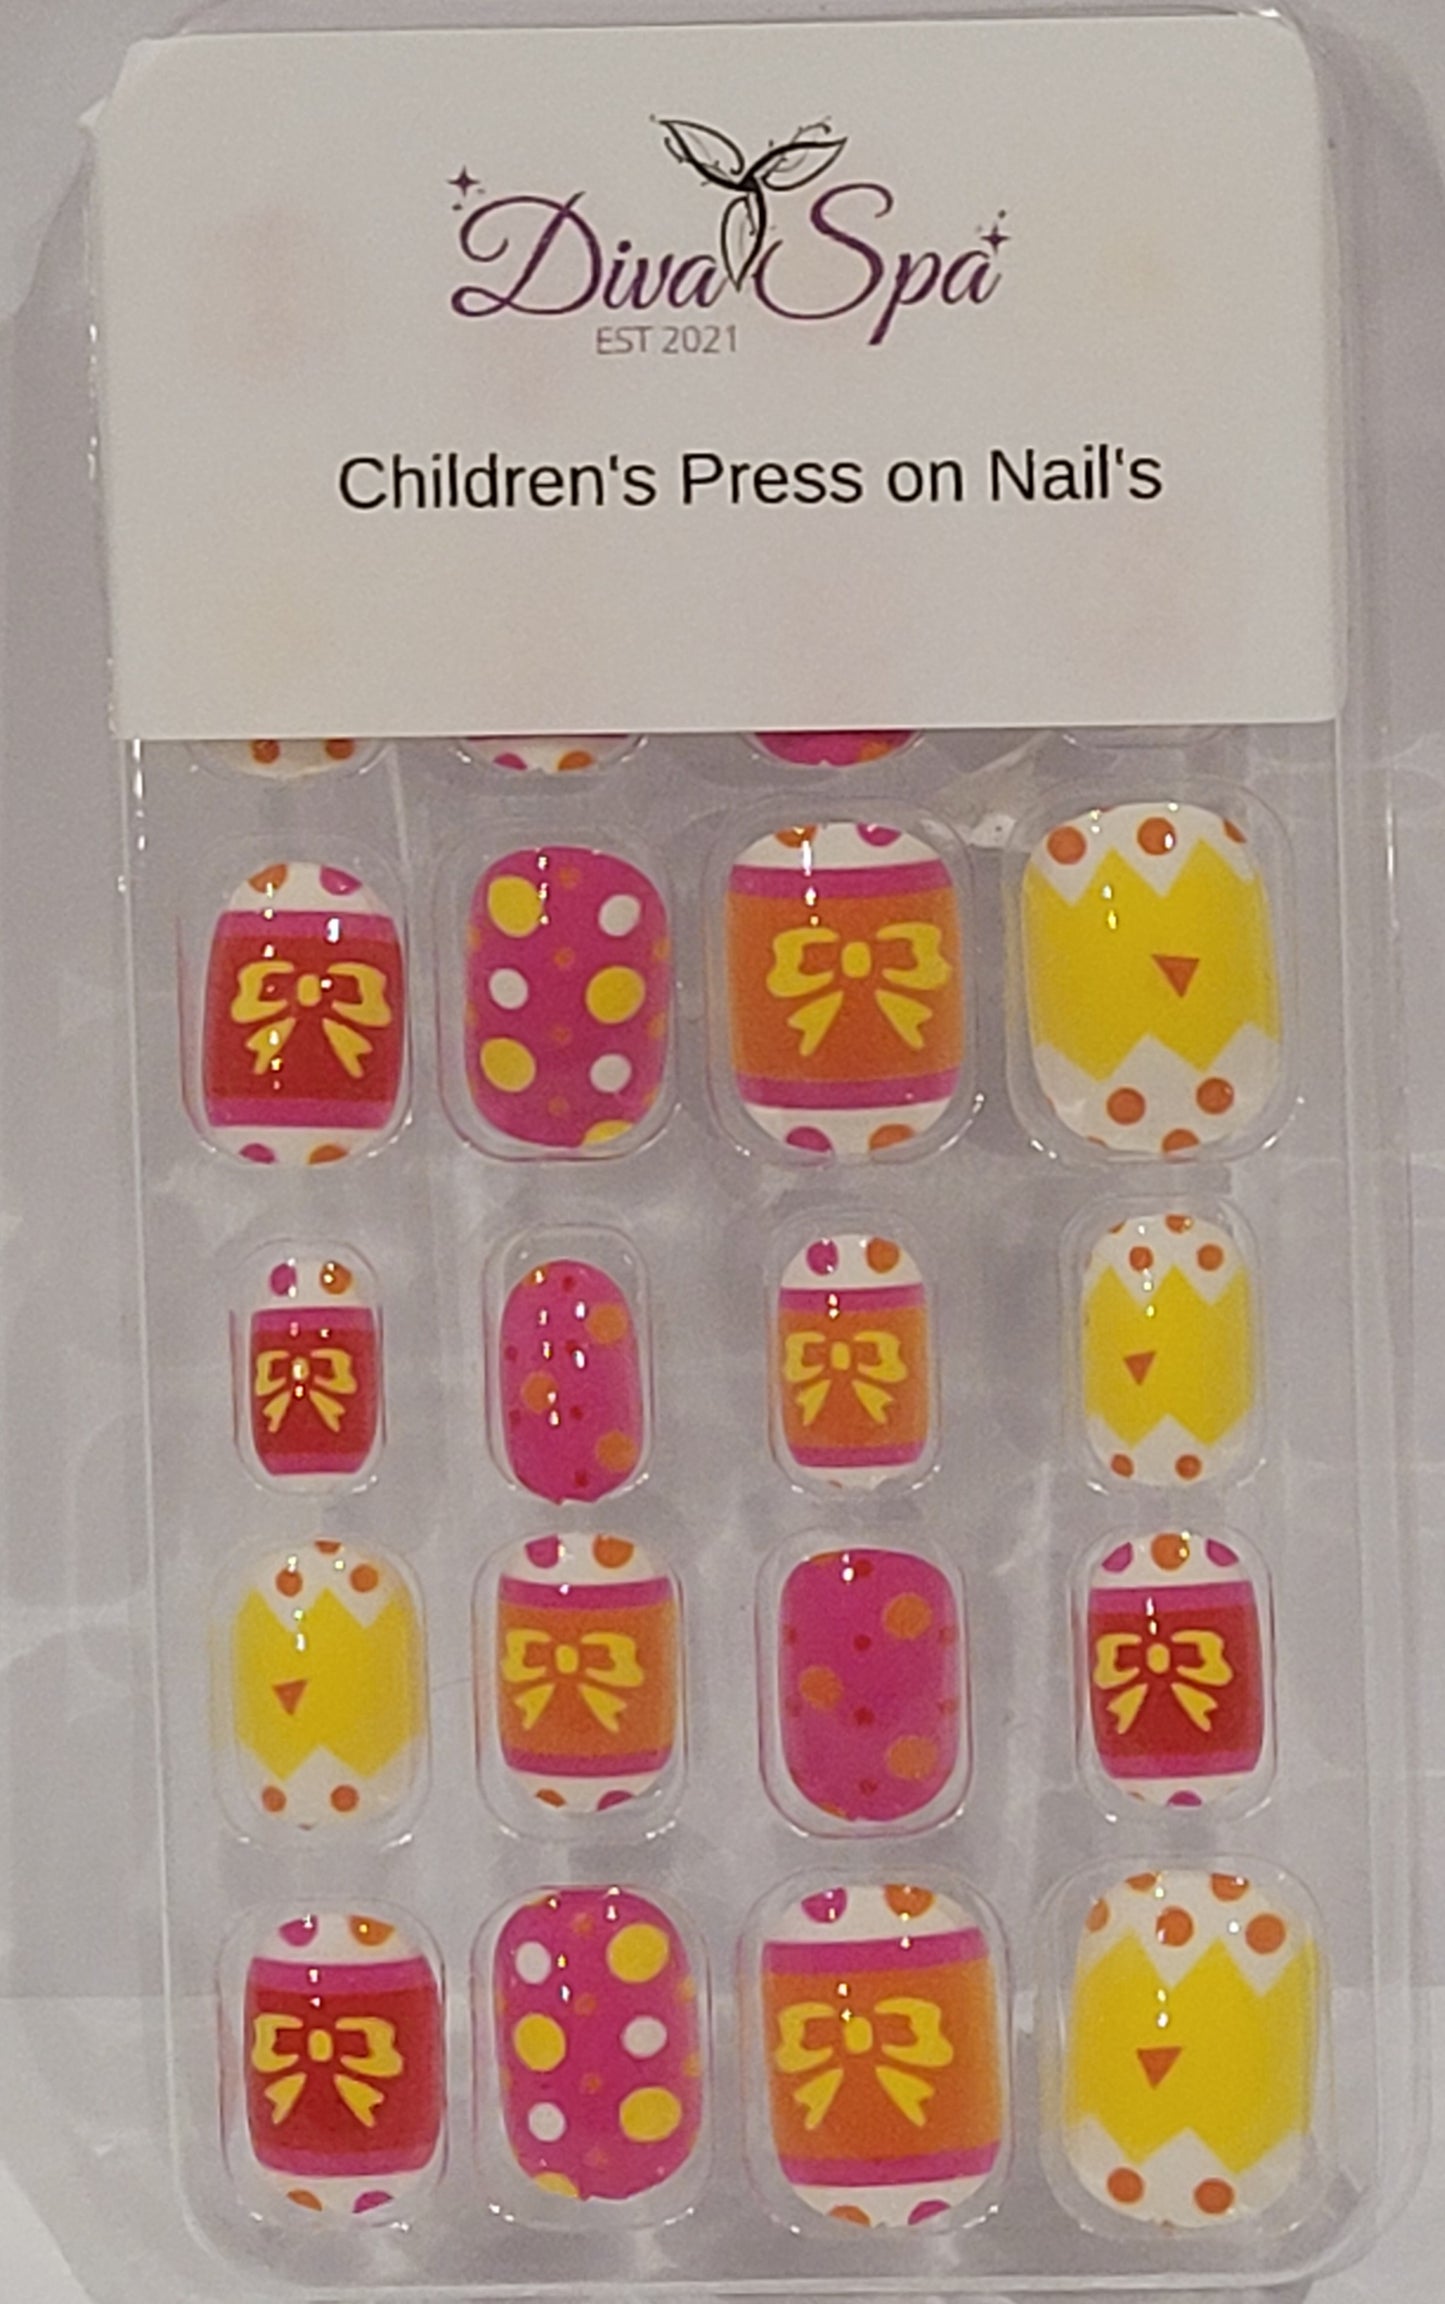 Children's premade press on nails